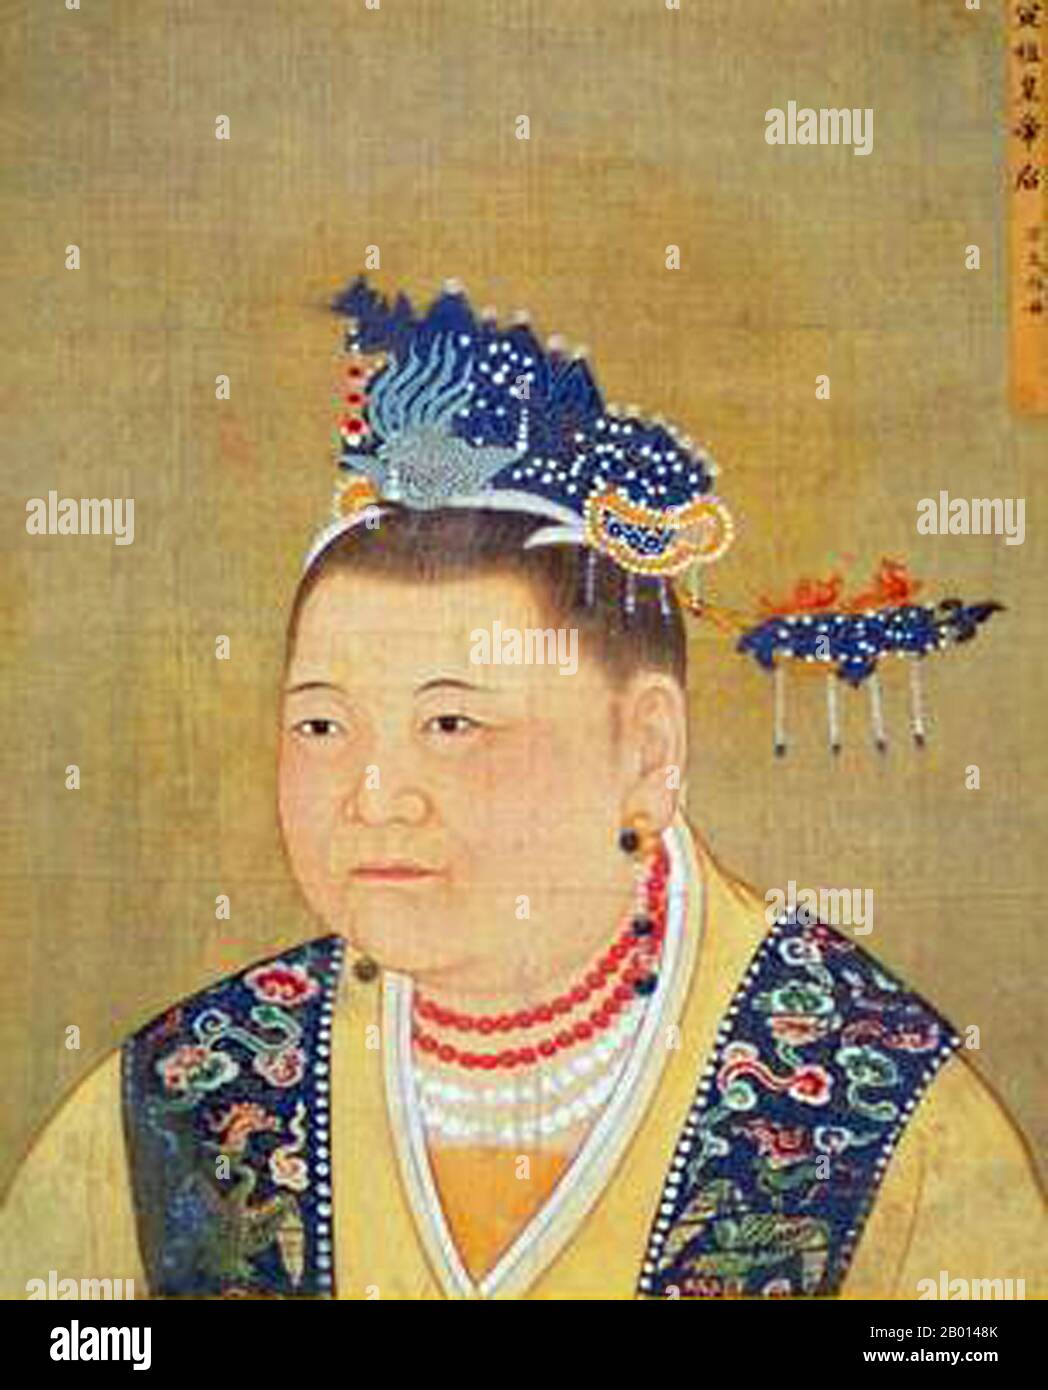 Chine : impératrice Dowager Zhaoxian (902 - 17 juillet 961), mère des deux premiers empereurs de la chanson Taizu et Taizong. Peinture à défilement suspendu, Song Dynasty (960-1279). Lady du, officiellement connue sous le nom de Zhaoxian, était une femme de la dynastie Song. Elle était l'épouse du général Zhao Hongyin et mère des deux premiers empereurs de la chanson Taizu et Taizong. L'empereur Taizong a revendiqué la légitimité du trône par son apparente volonté, prétendument scellé dans une étagère dorée à sa mort, bien que de nombreux historiens croient qu'il a fabriqué cela. Banque D'Images